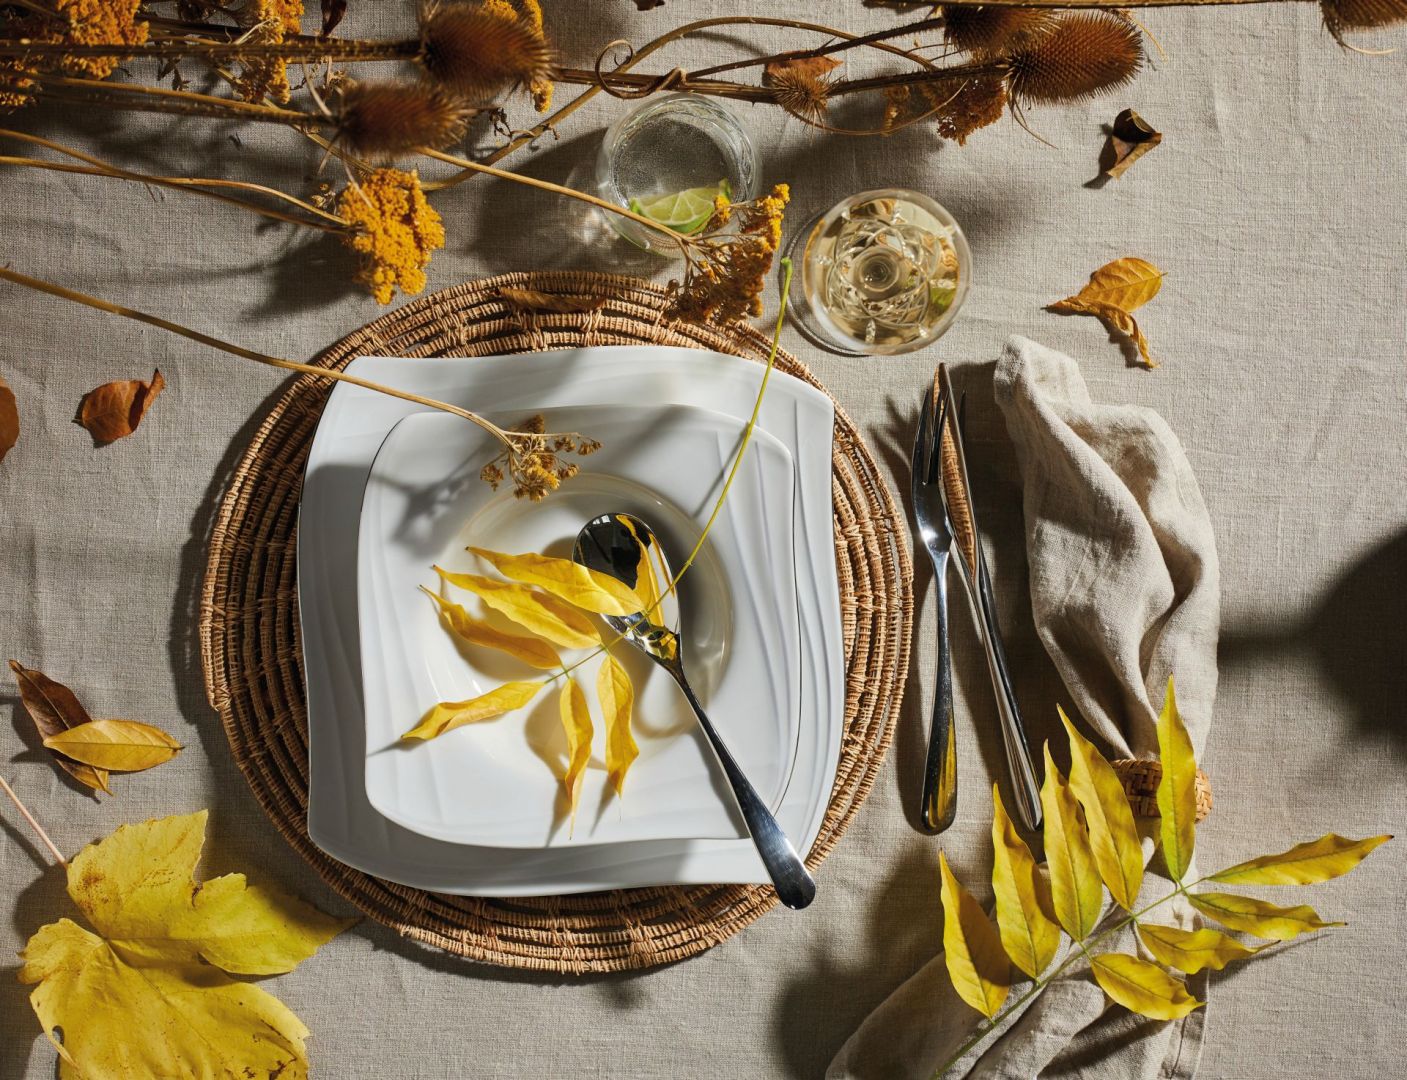 Tak możesz zaaranżować jesienny stół. Kolekcja Fyrklövern Celebration została zaprojektowana przez artystkę Anne Rooslien. Fot. mat. prasowe Fyrklövern 